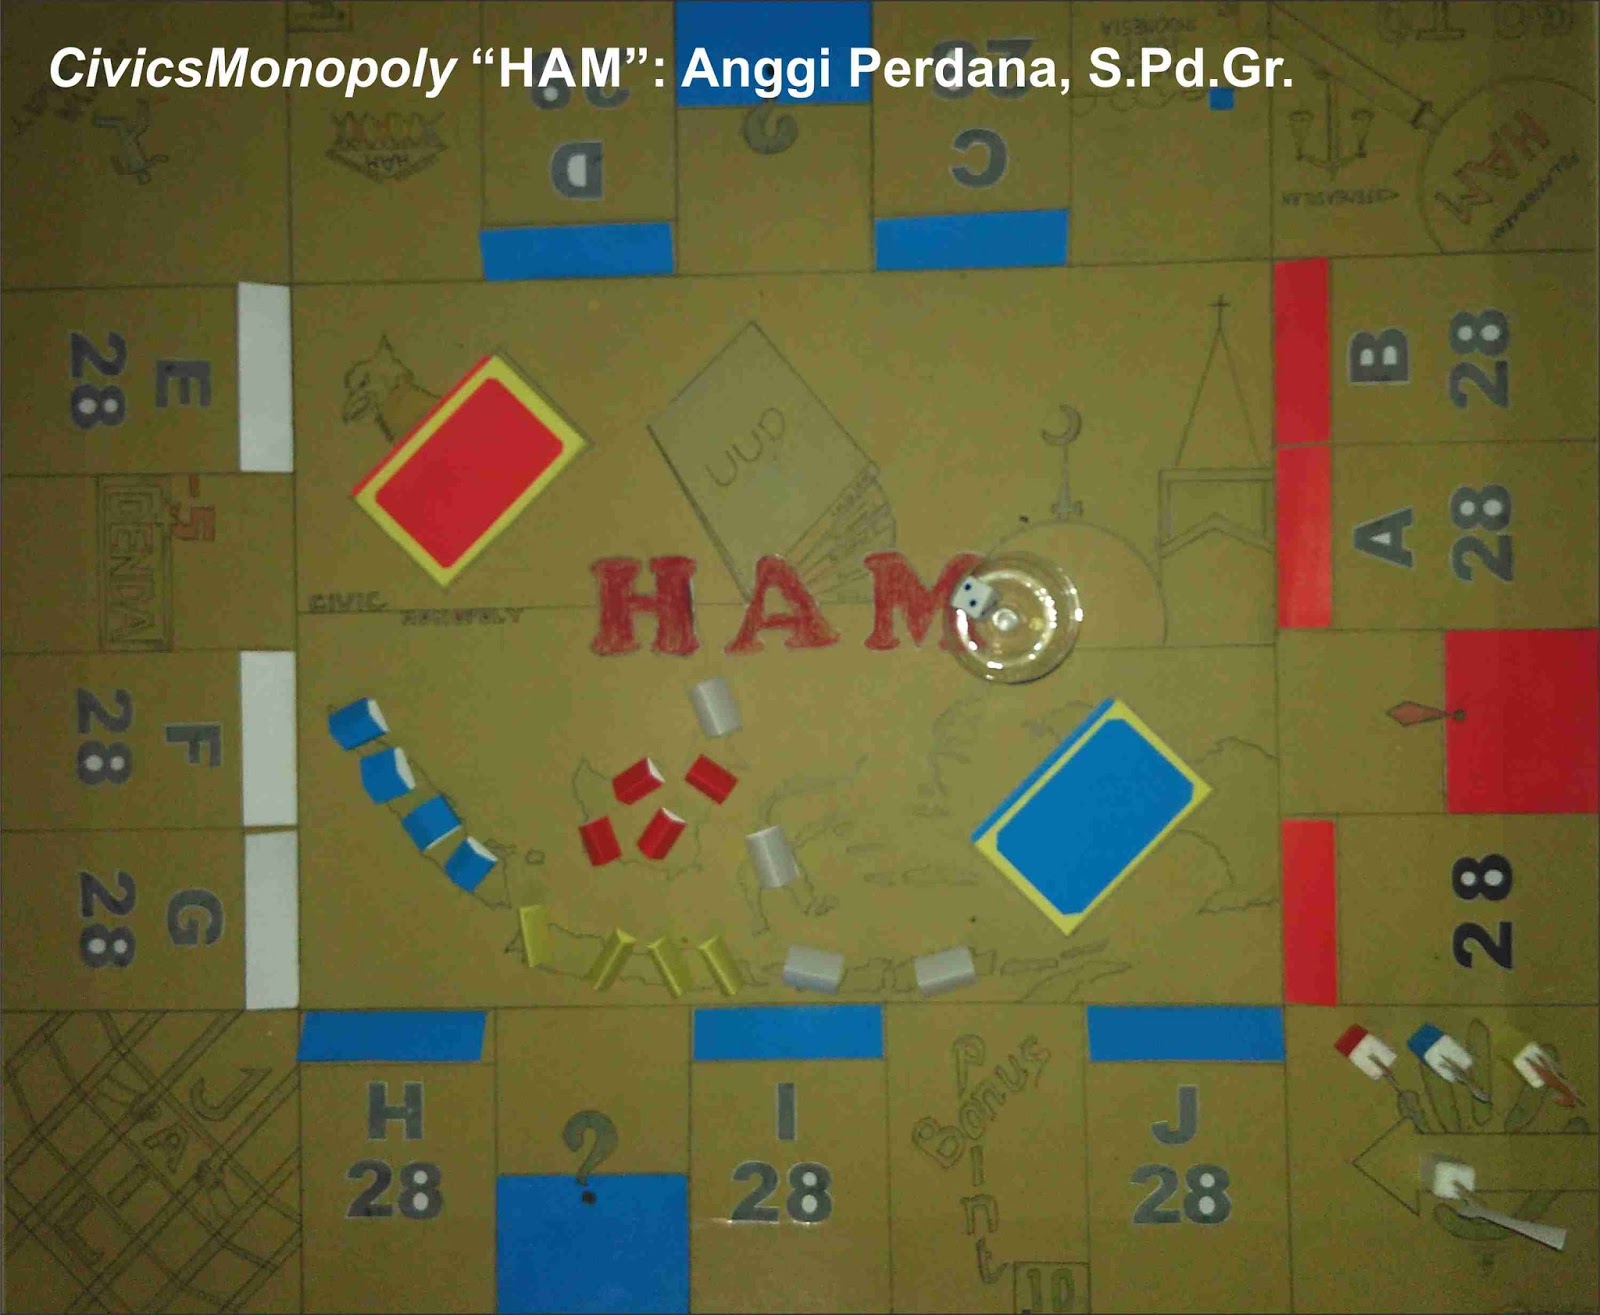 Permainan monopoly saya terapkan untuk mata pelajaran PKn pada BAB III Kelas X KTSP yakni materi tentang HAM Oleh sebab itu permainannya saya namakan